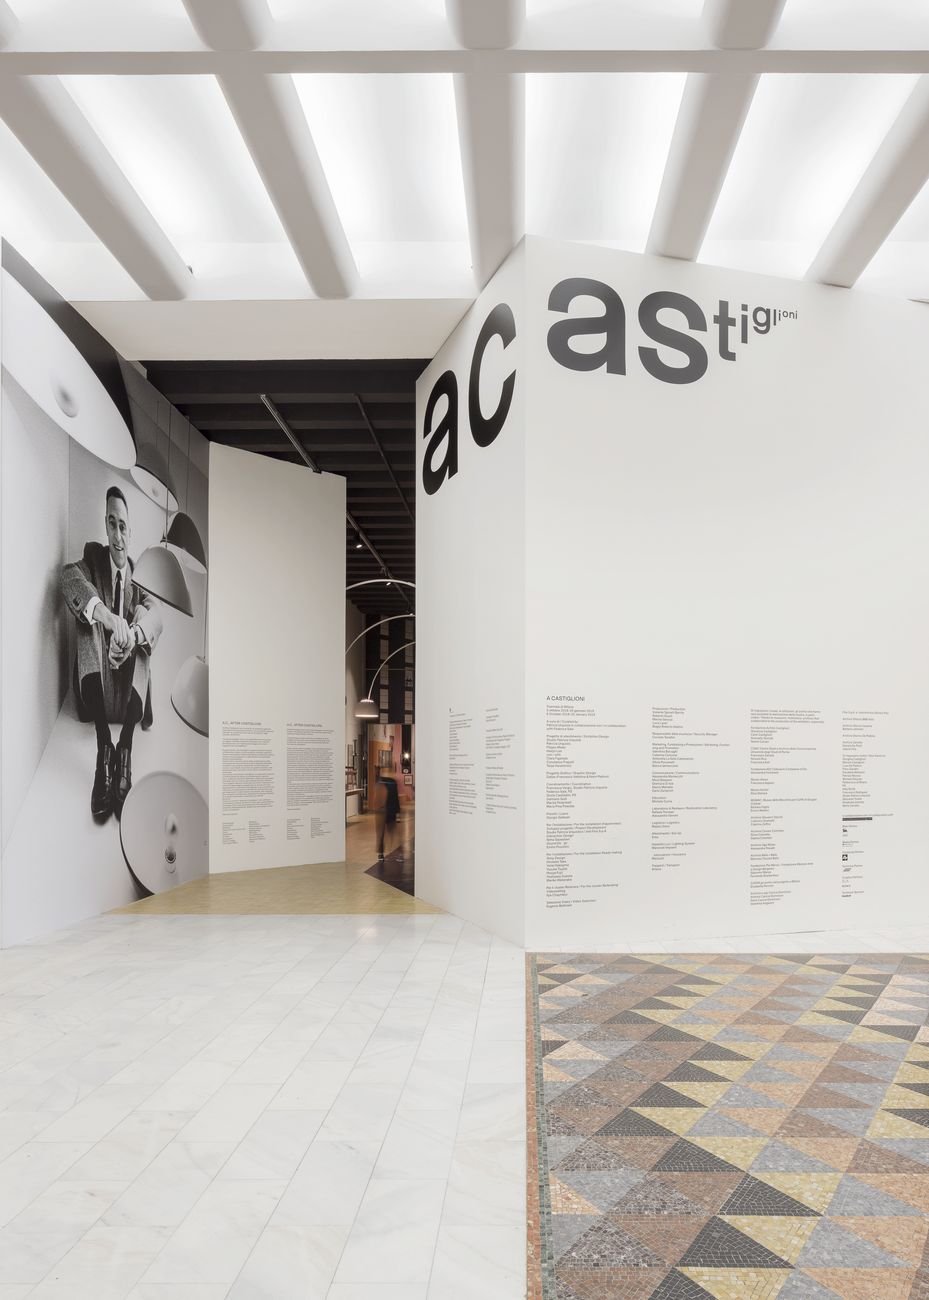 Studio Dallas, Grafica allestitiva della mostra A Castiglioni, Triennale di Milano, 2018